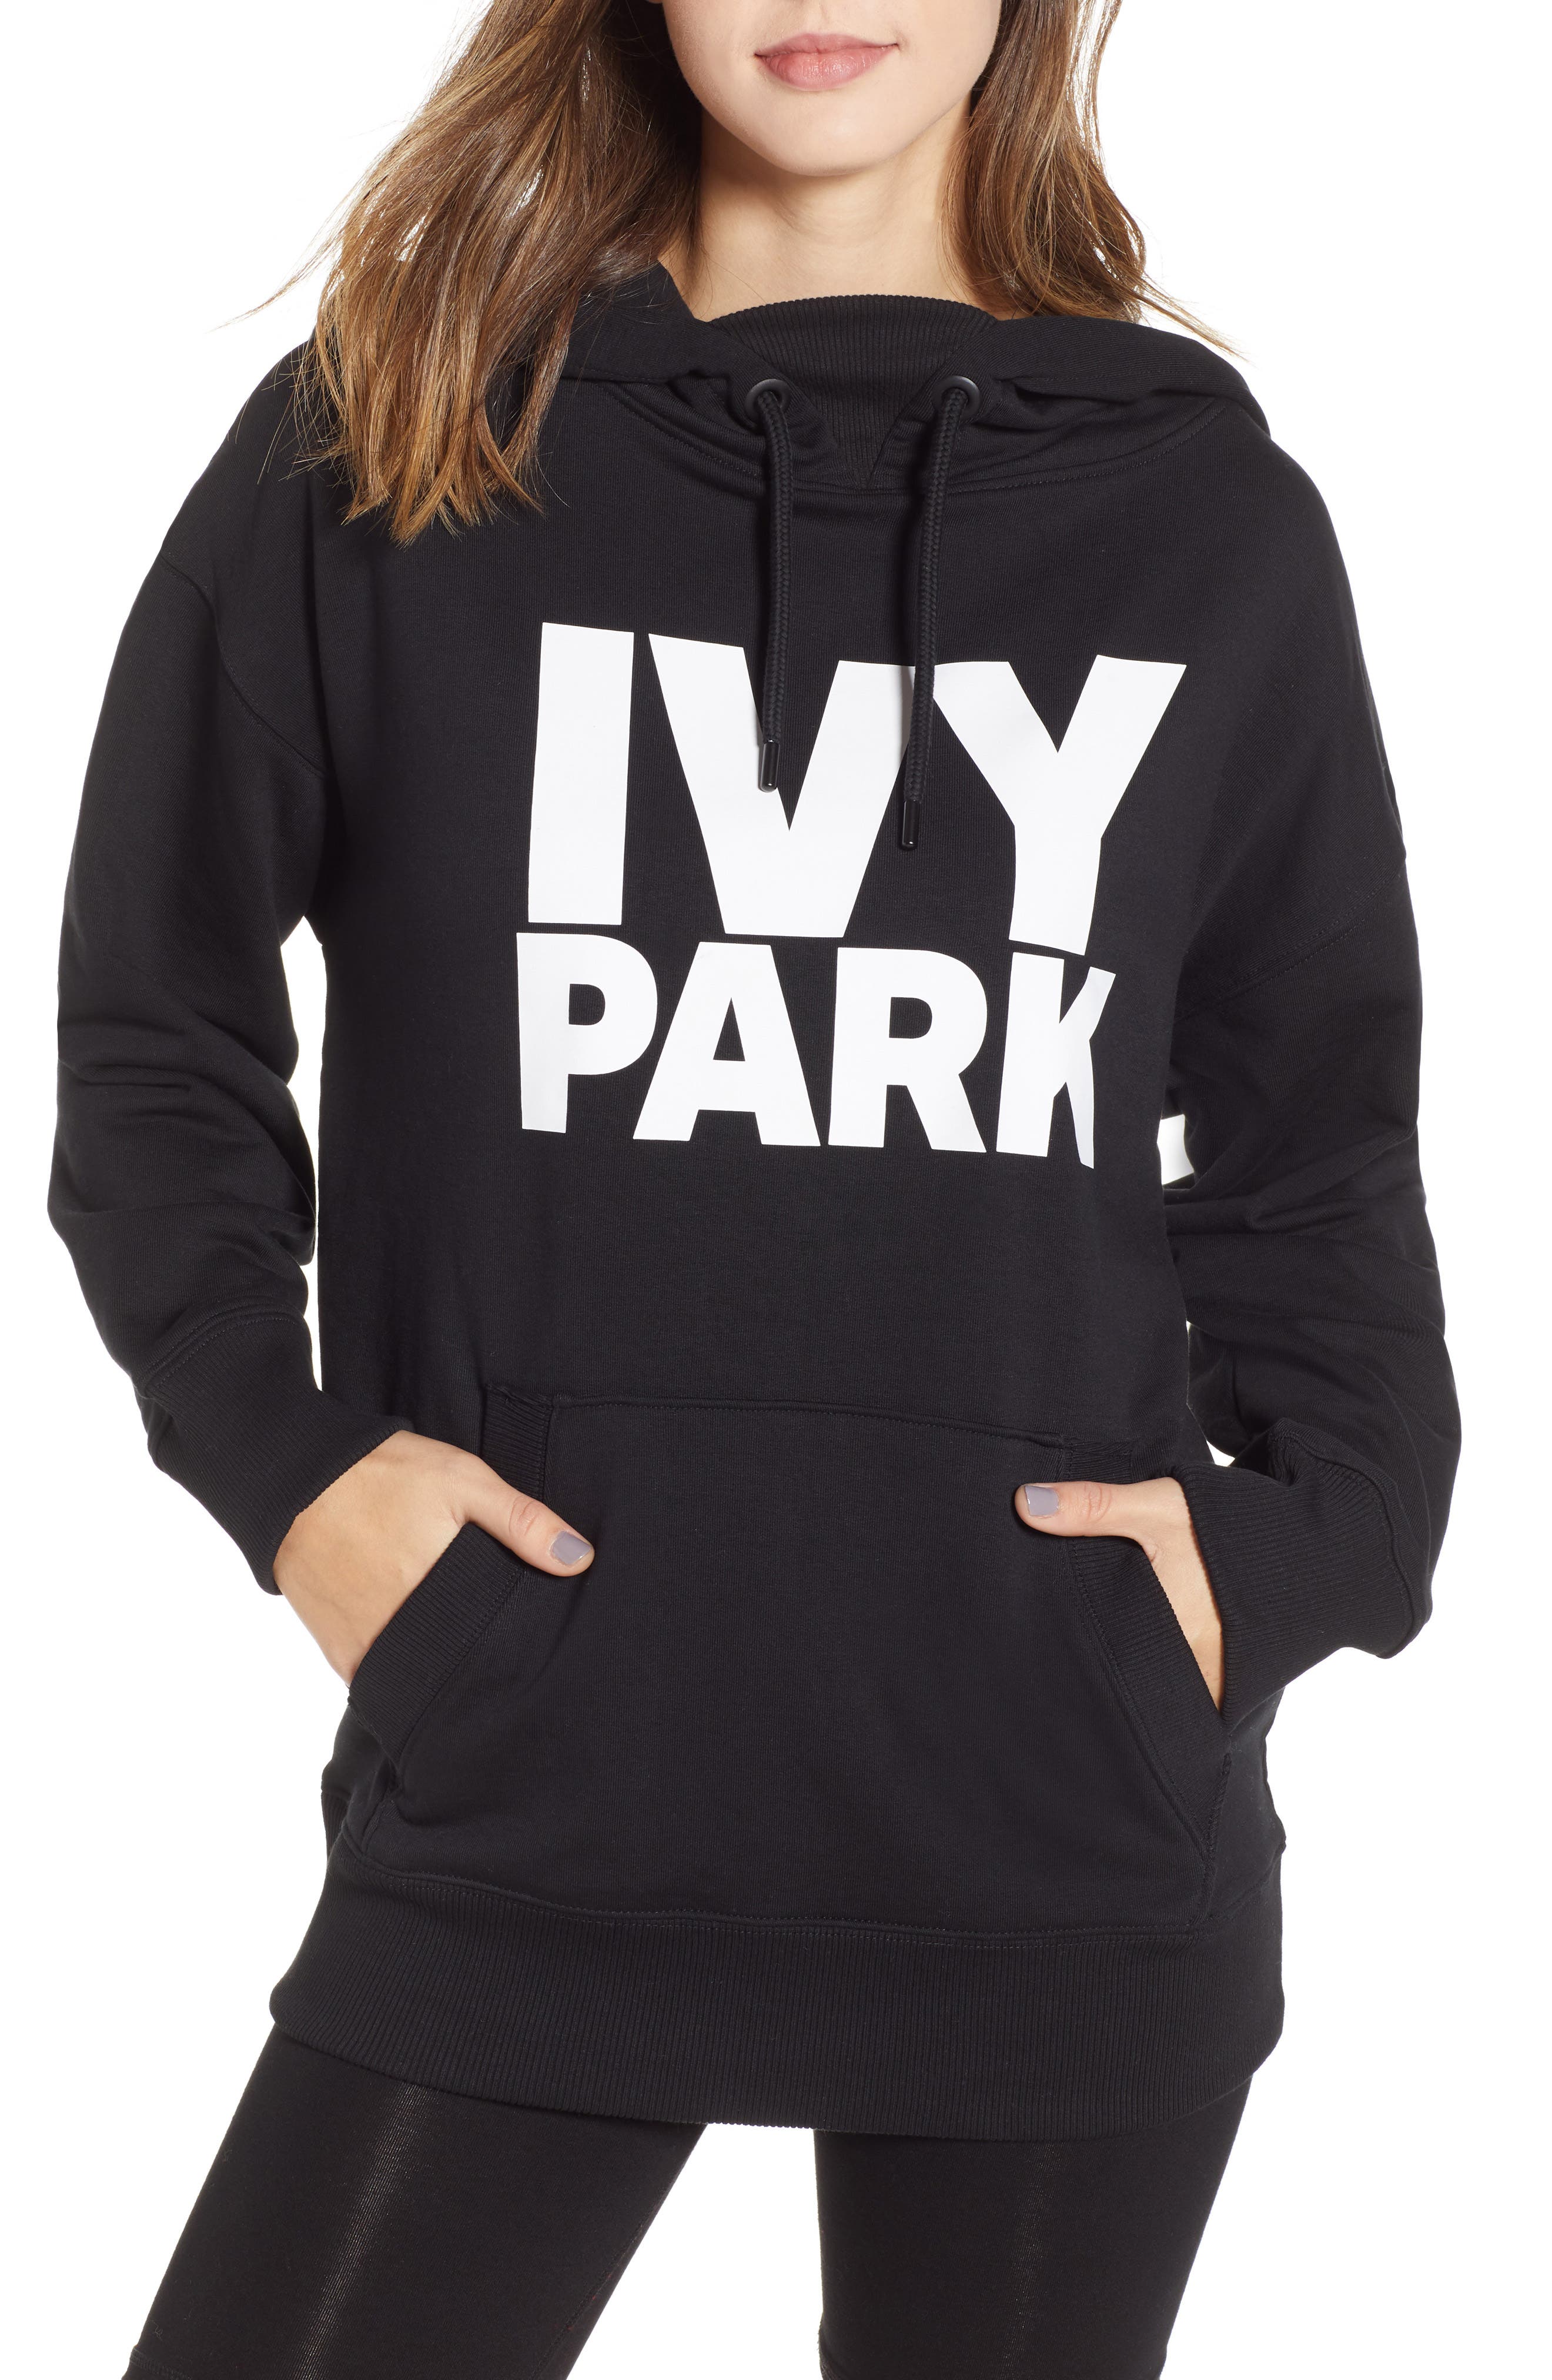 ivy park hoodies